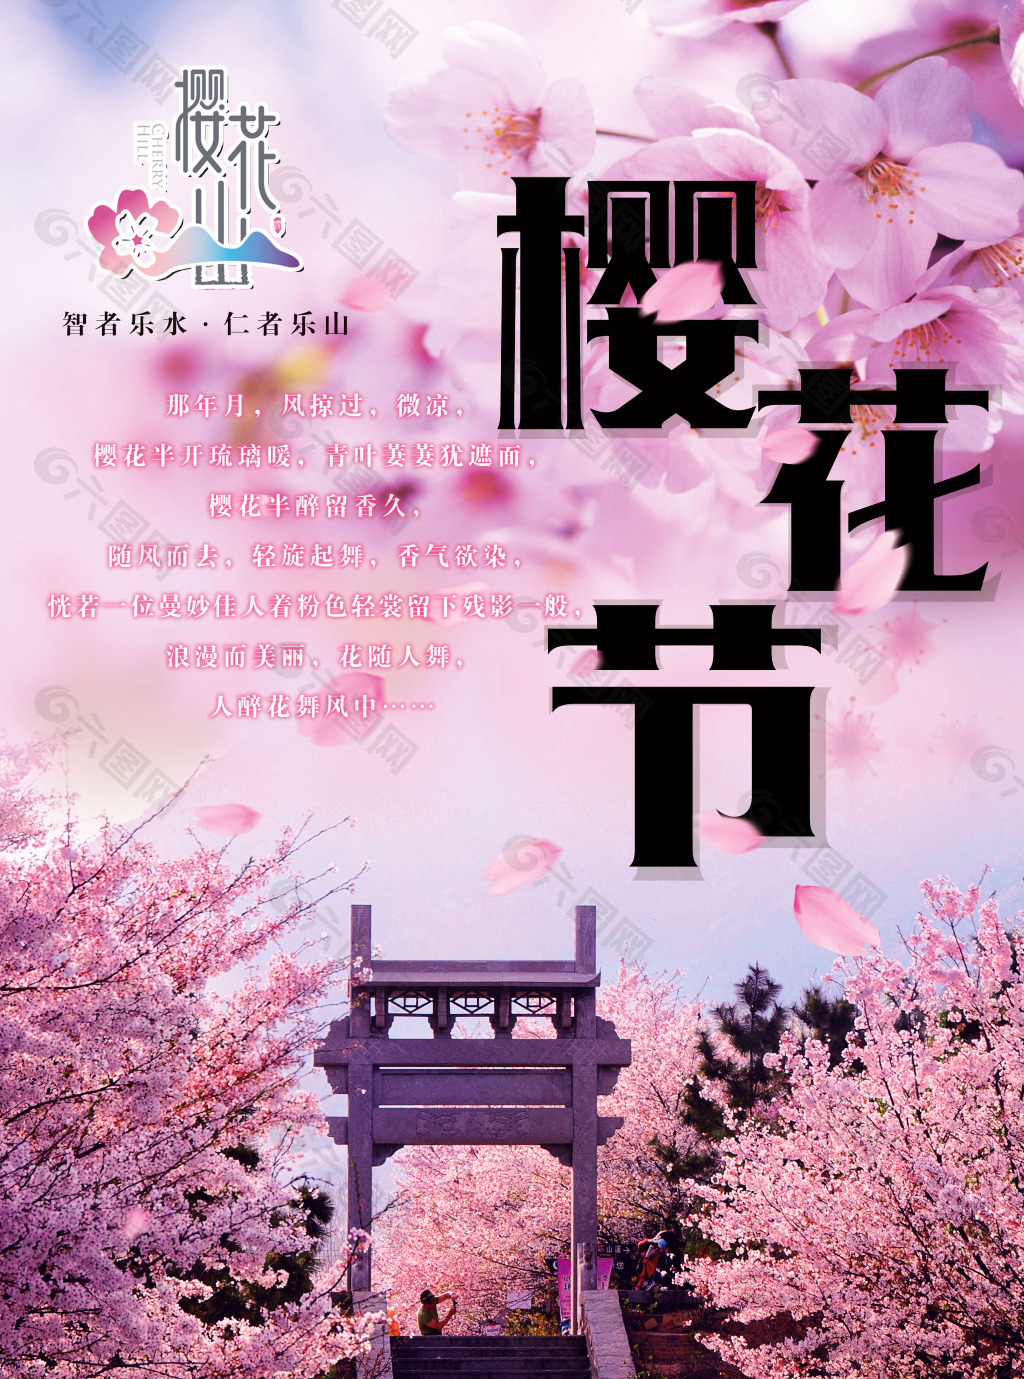 一流赏樱基地樱花节宣传海报设计psd素材